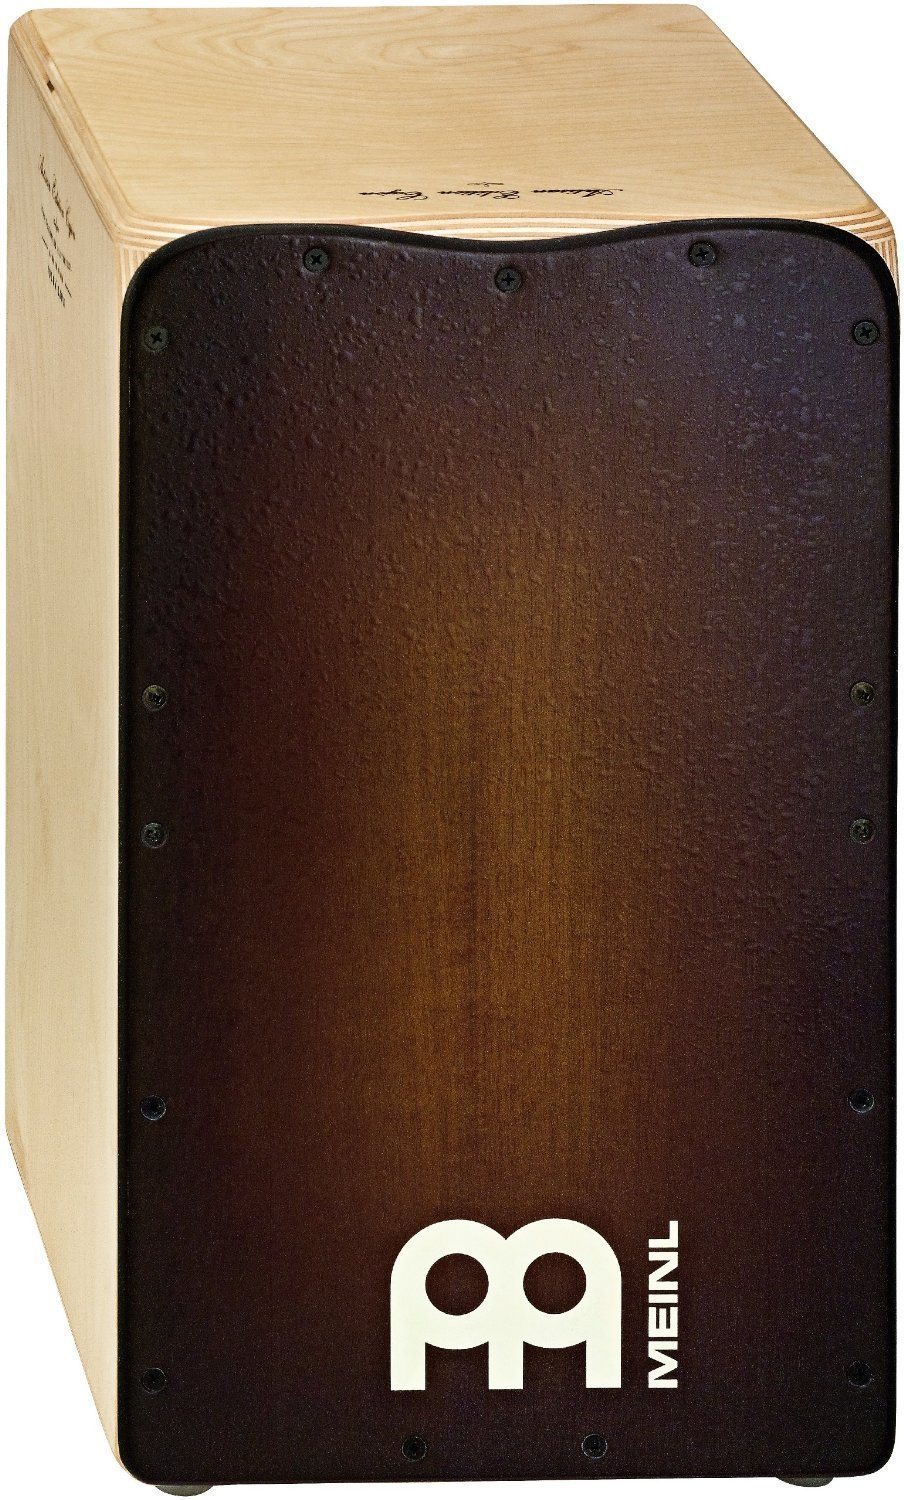 Wood-Cajon Meinl AE-CAJ3 Artisan Edition Cajon Espresso Burst